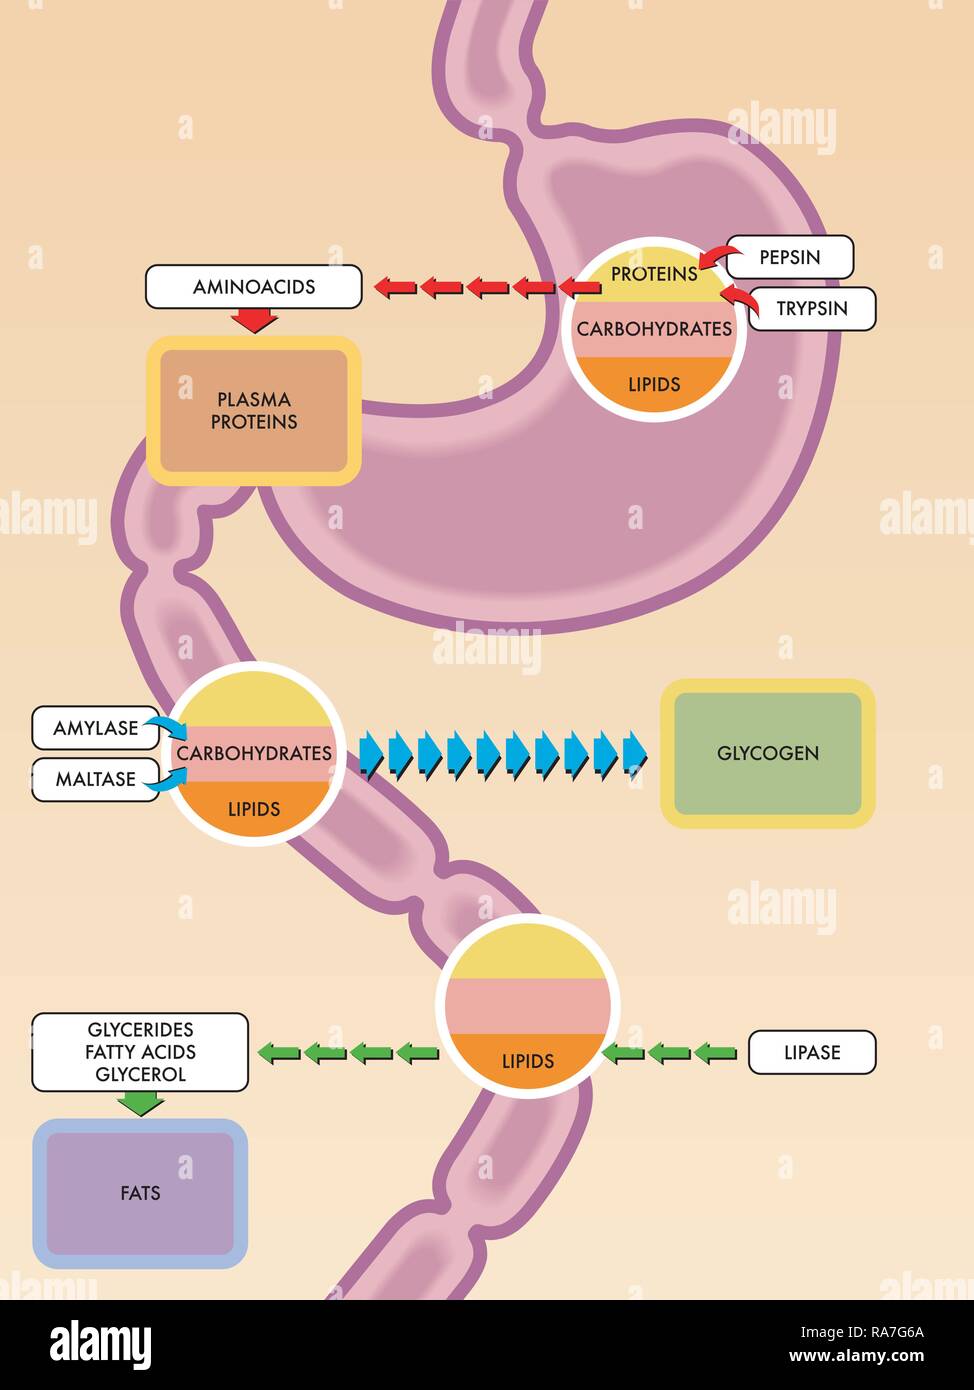 Une illustration de l'appareil digestif et des enzymes et des molécules qu'ils réagissent avec. Illustration de Vecteur